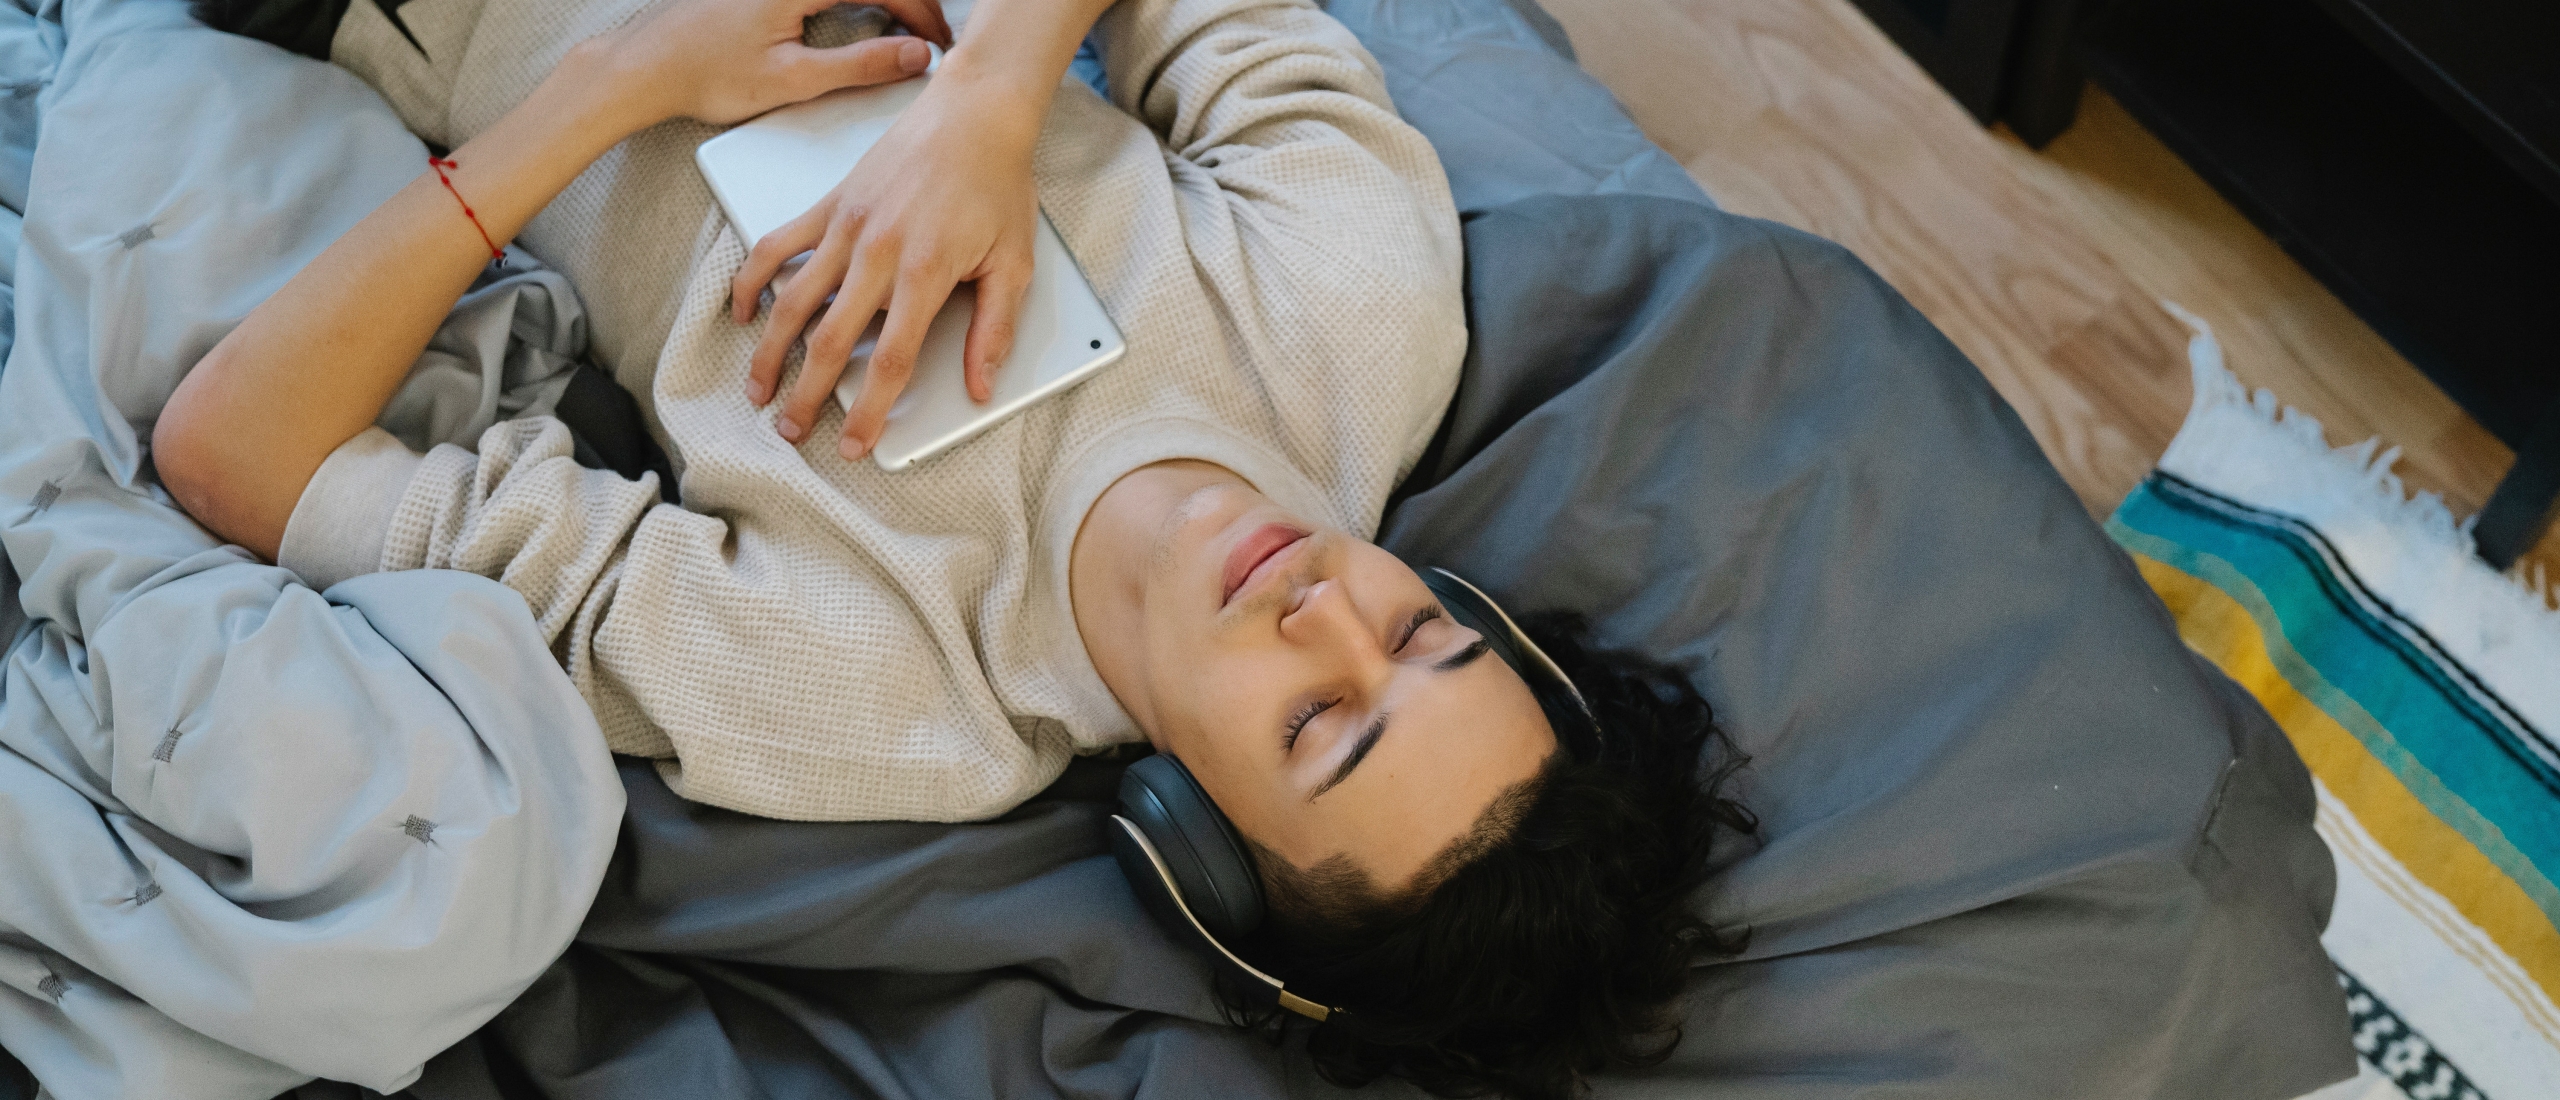 Slapen met muziek | val je hierdoor sneller in slaap?